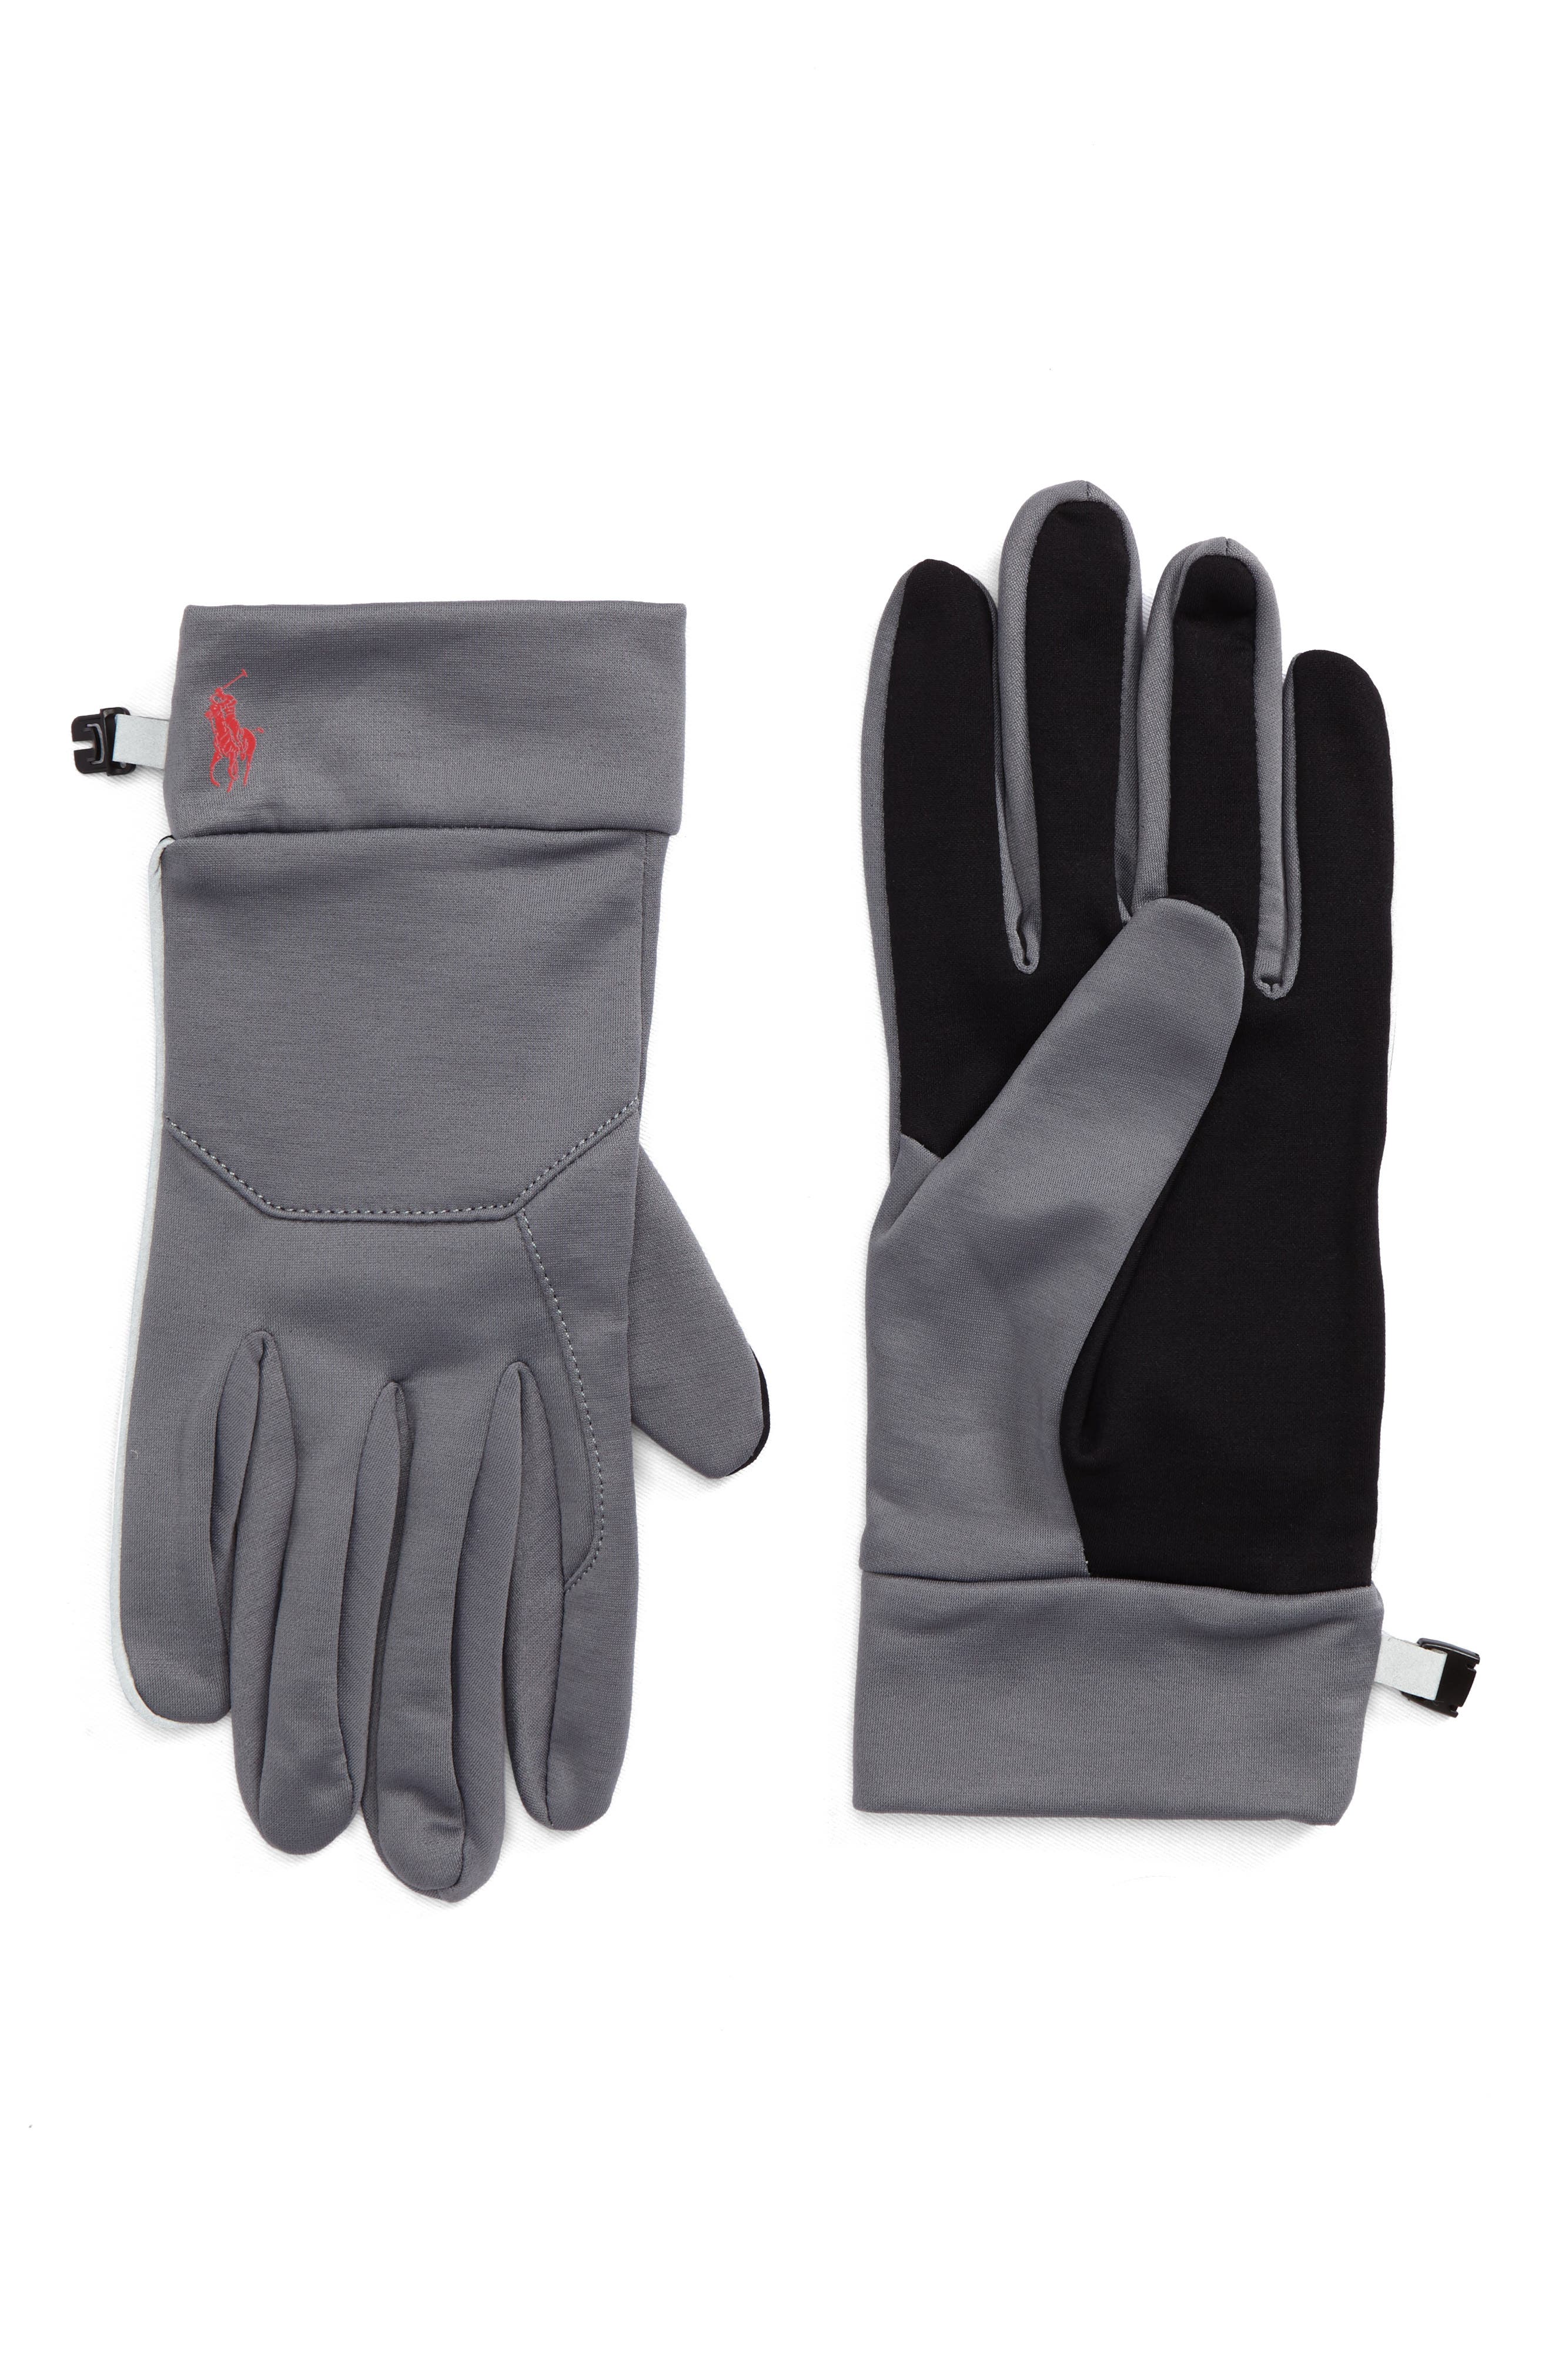 nike winter gloves sale